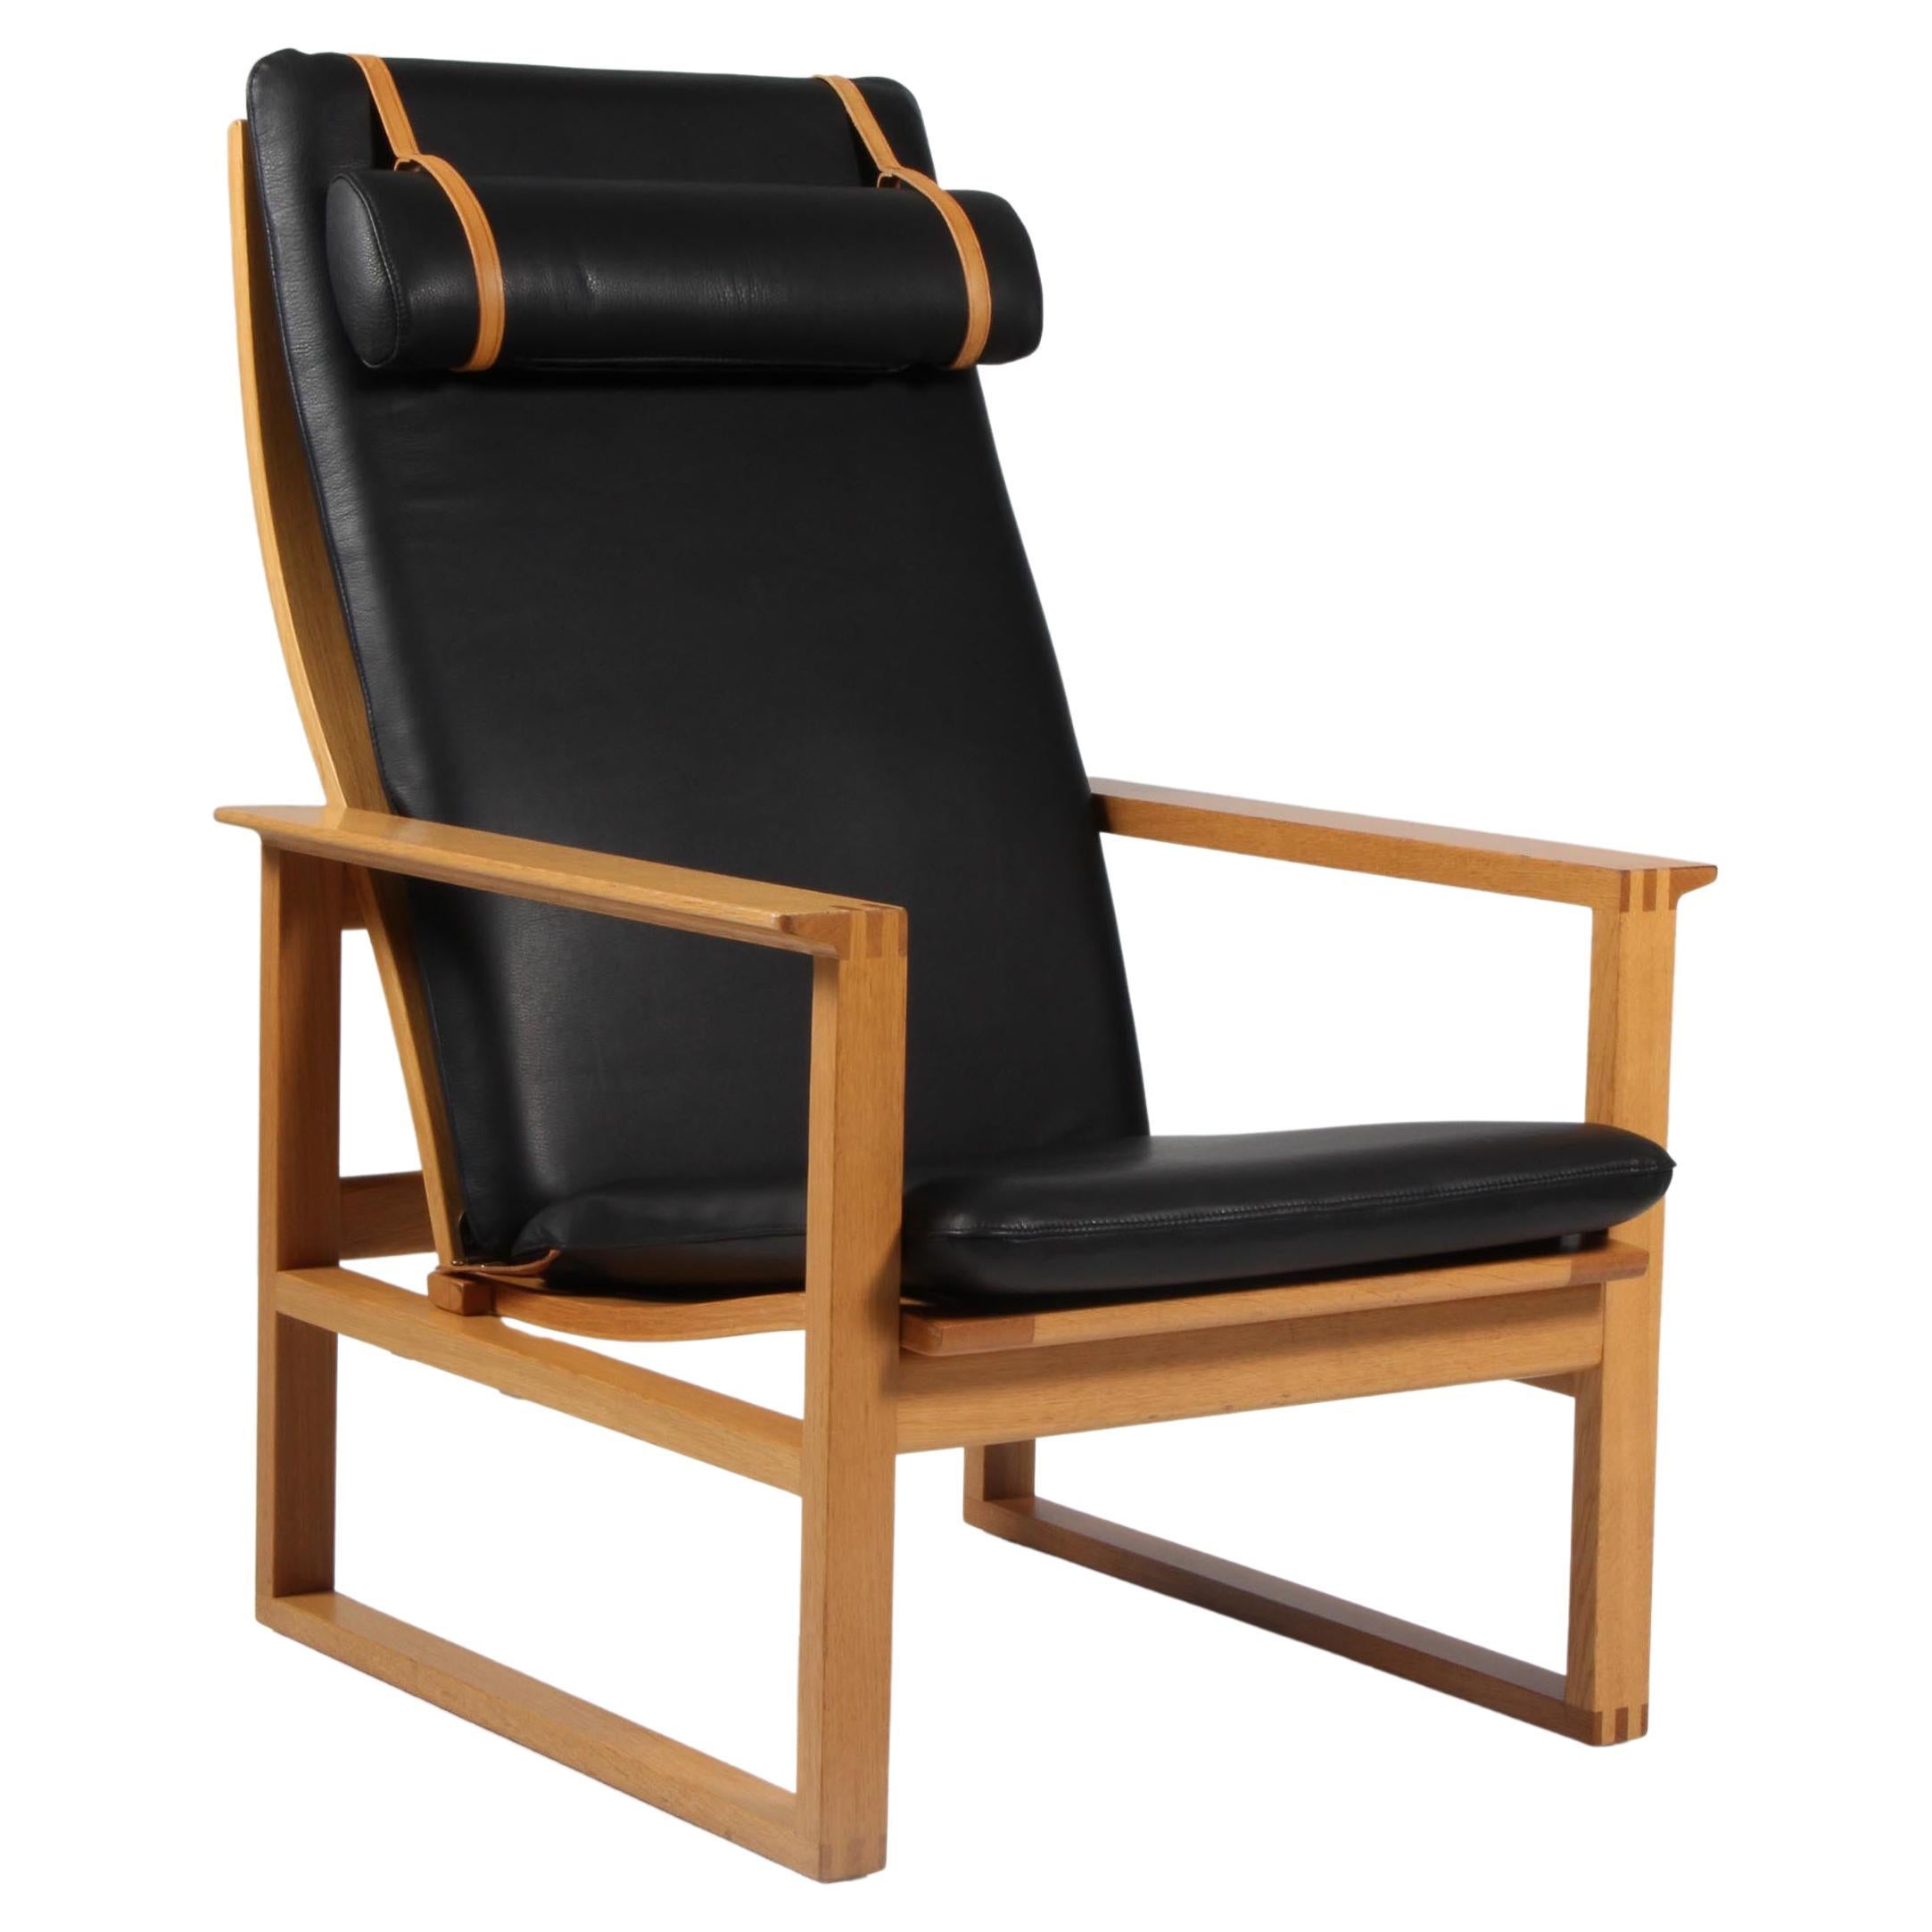 Børge Mogensen 2254 Oak Sled Chair, 1956, Denmark